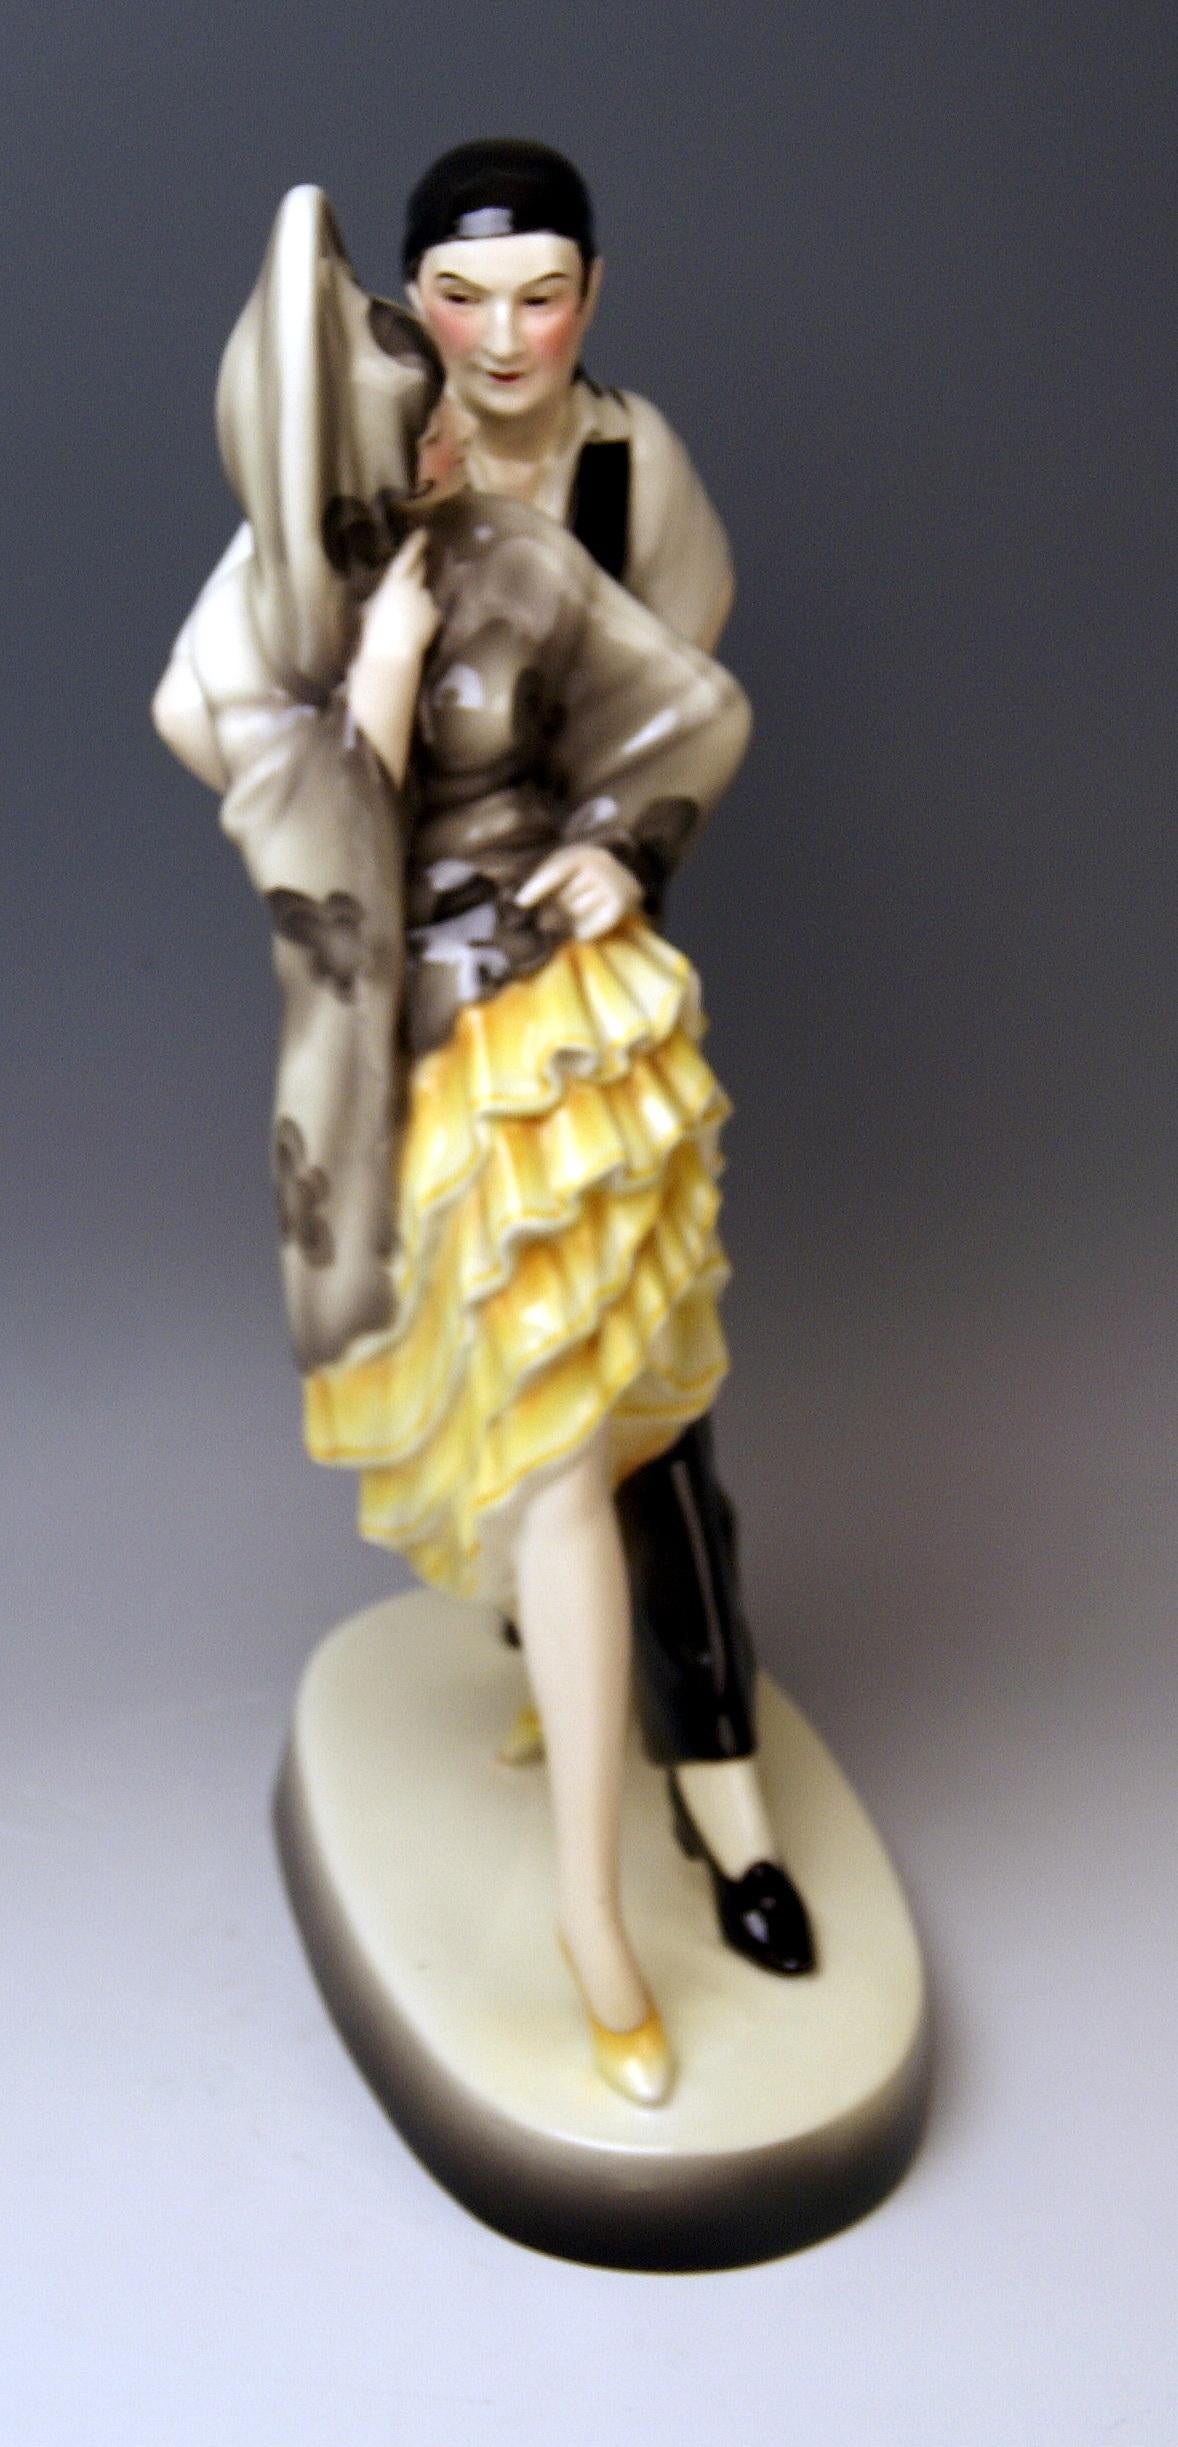 Goldscheider vienna - figurines de danse magnifiques : La danse espagnole

Conçu par Josef Lorenzl (1892-1950) / l'un des plus importants designers ayant travaillé pour la manufacture Goldscheider dans les années 1920-1940 / conçu en